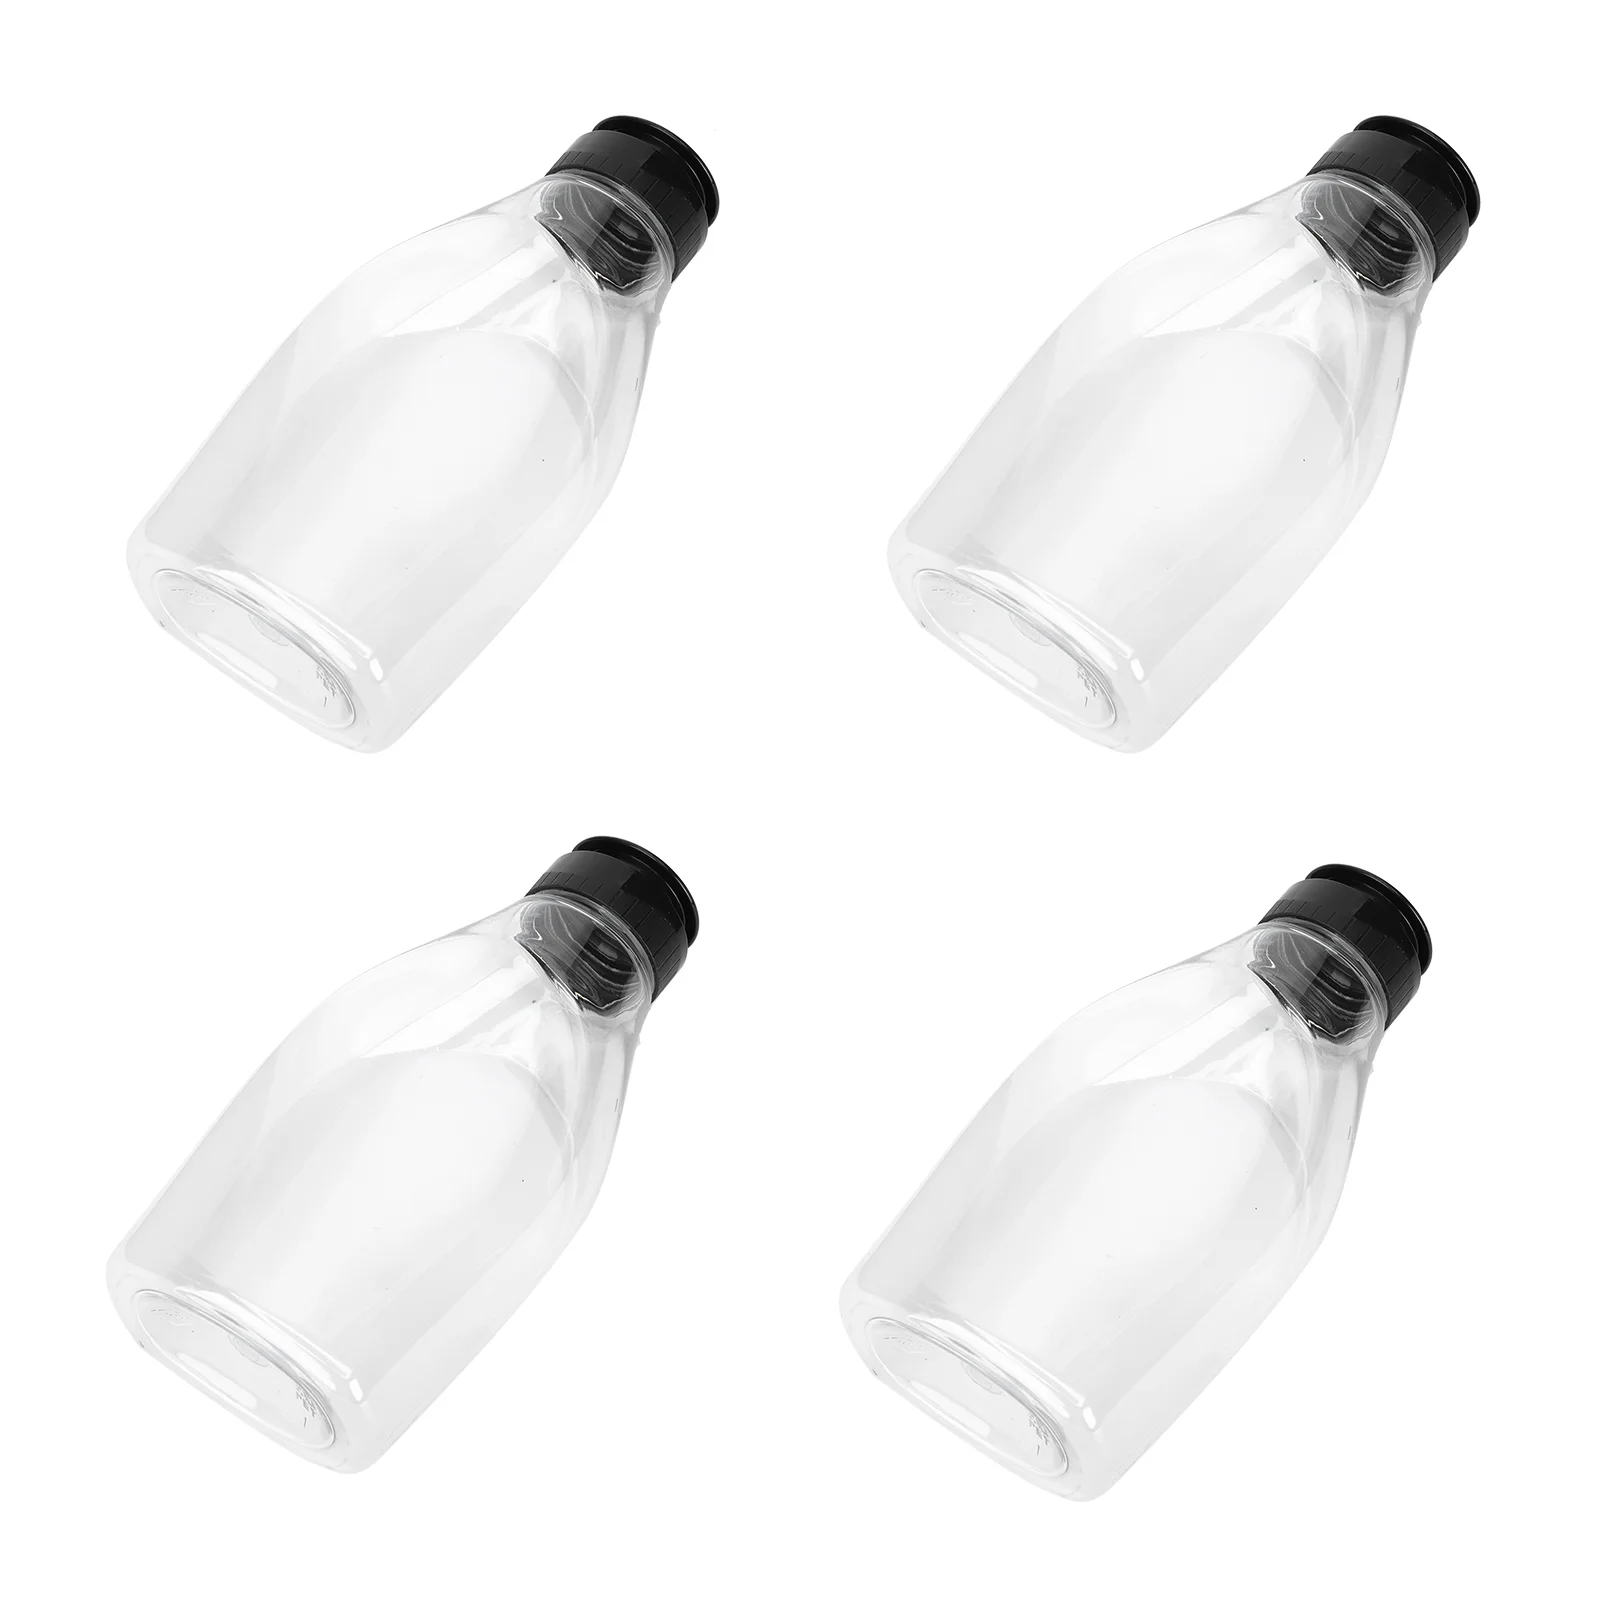 

4 Pcs Honey Bottle Mini Practical Sauce Dispensers Mel Squeeze Bottles Cap Ketchup The Pet Durable Containers Jam Plastic